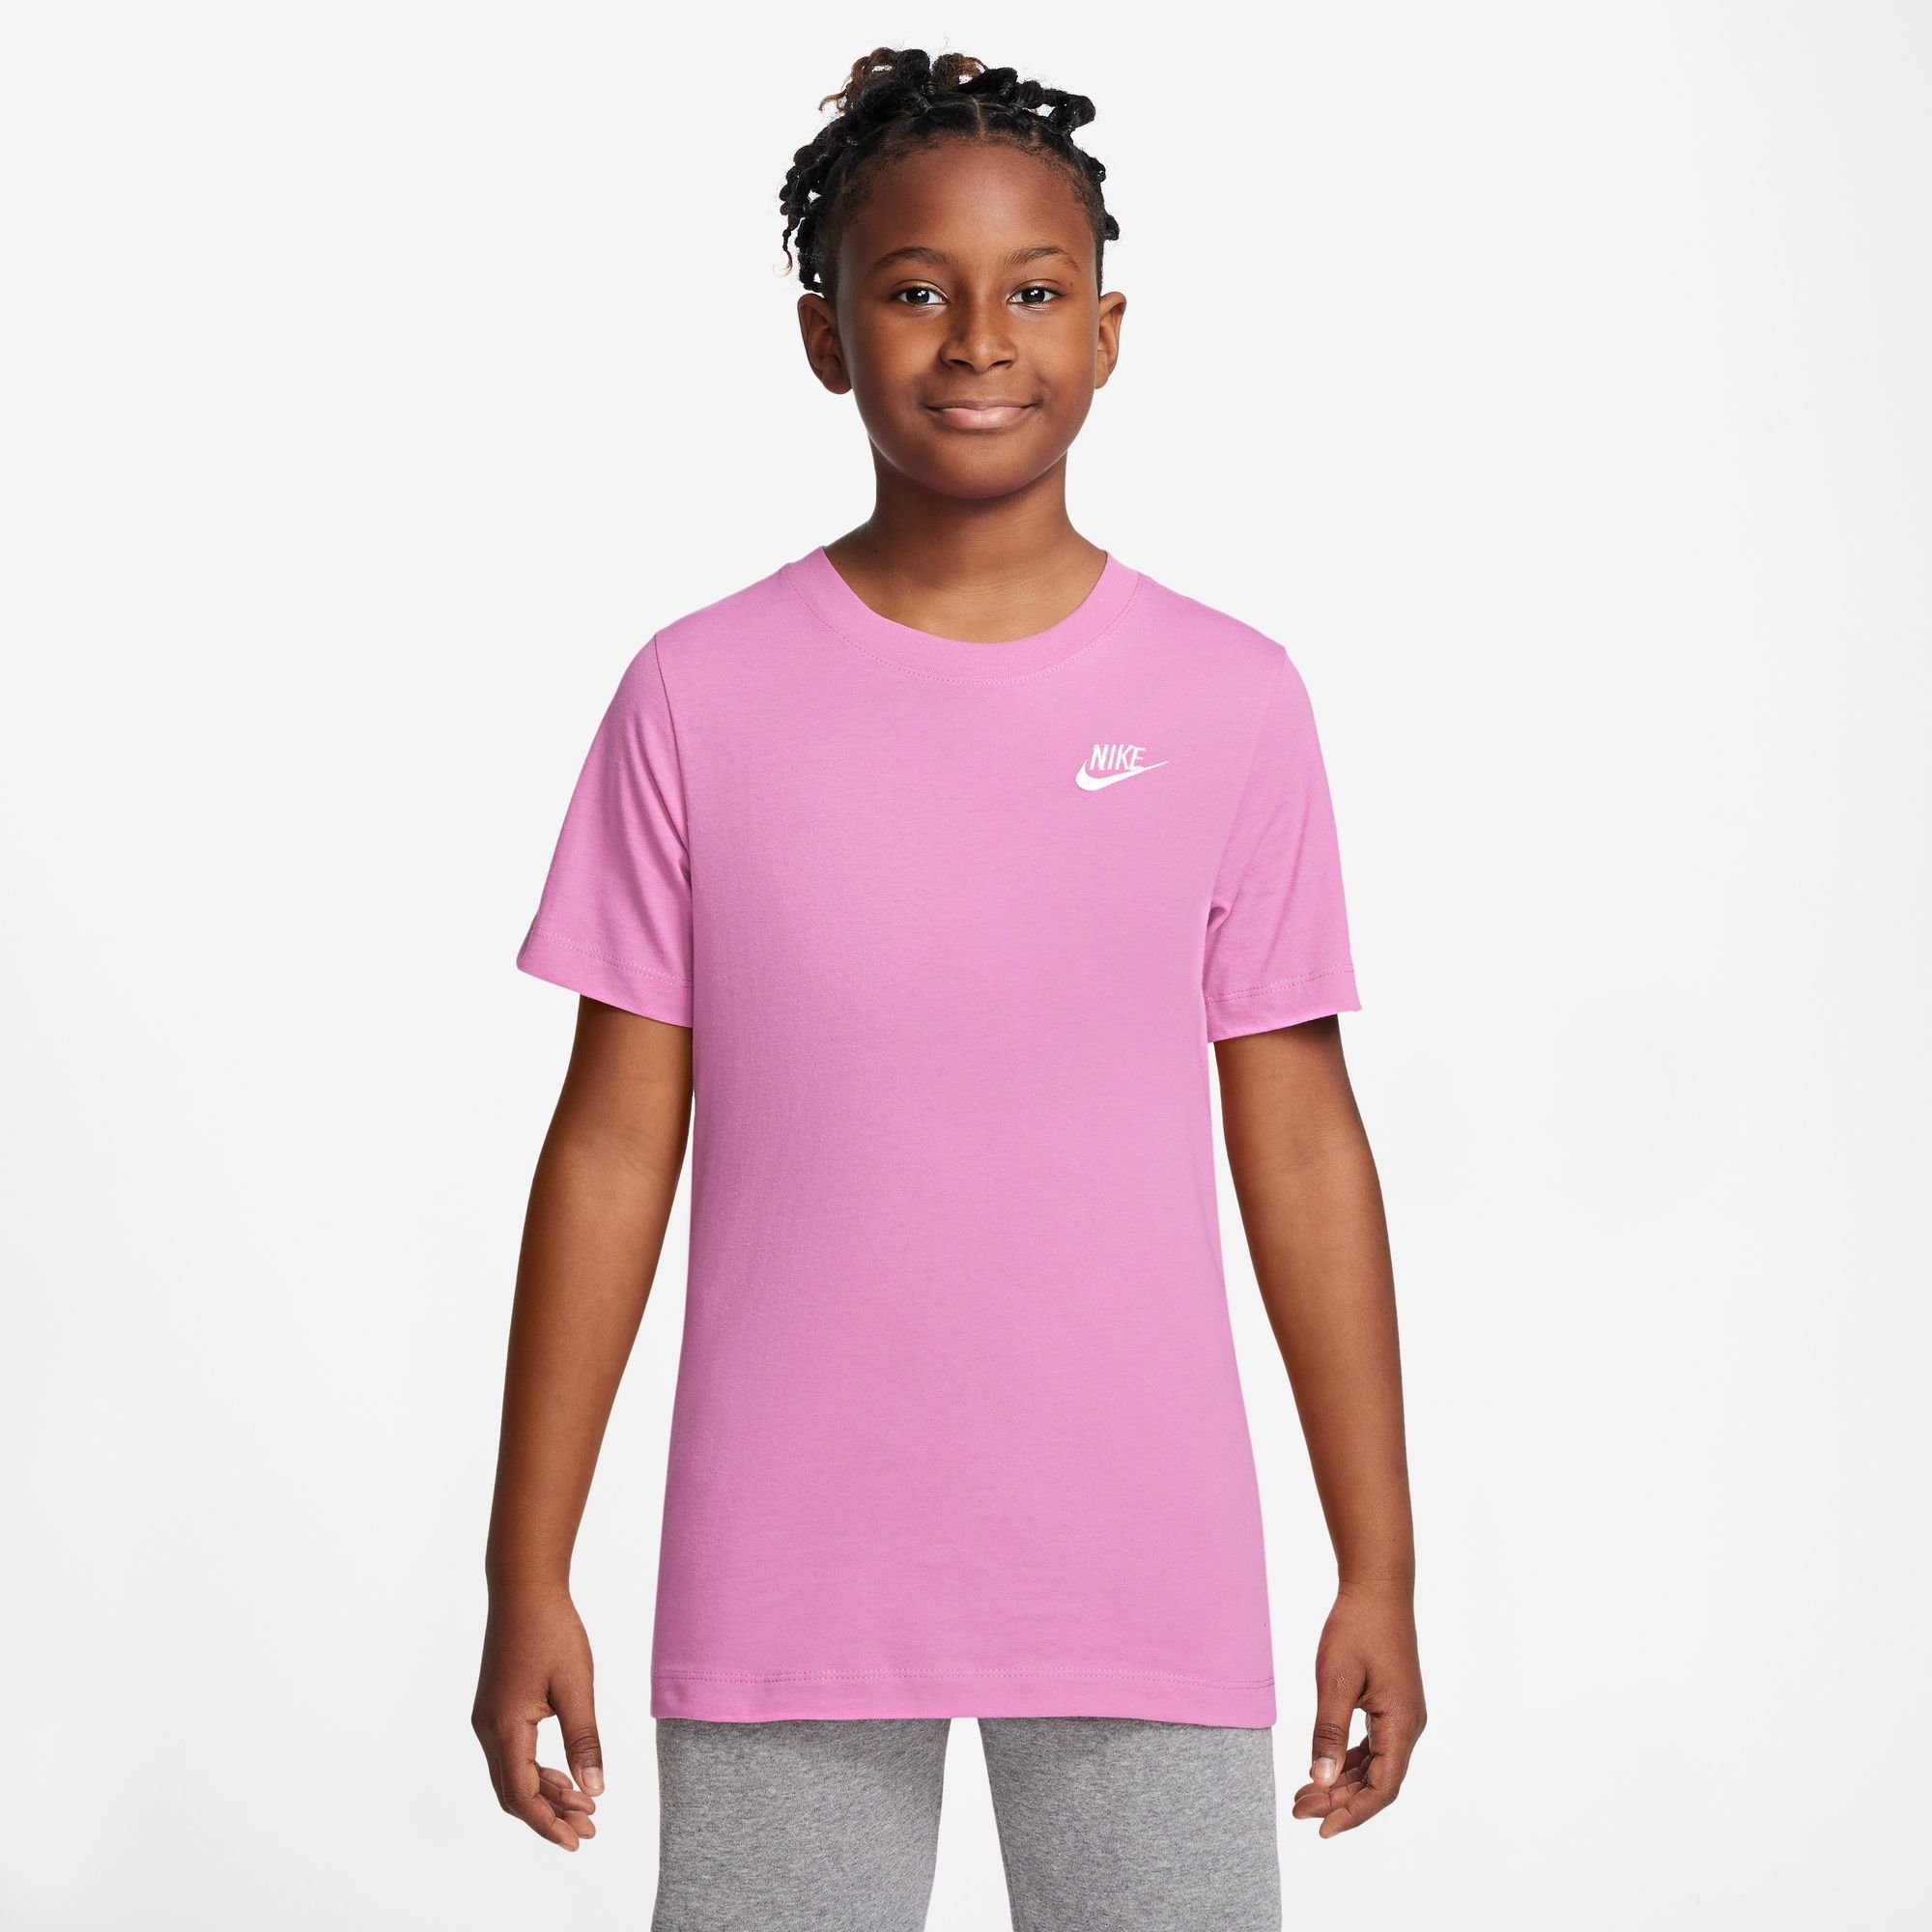 Beige Nike Damen T-Shirts online kaufen | OTTO